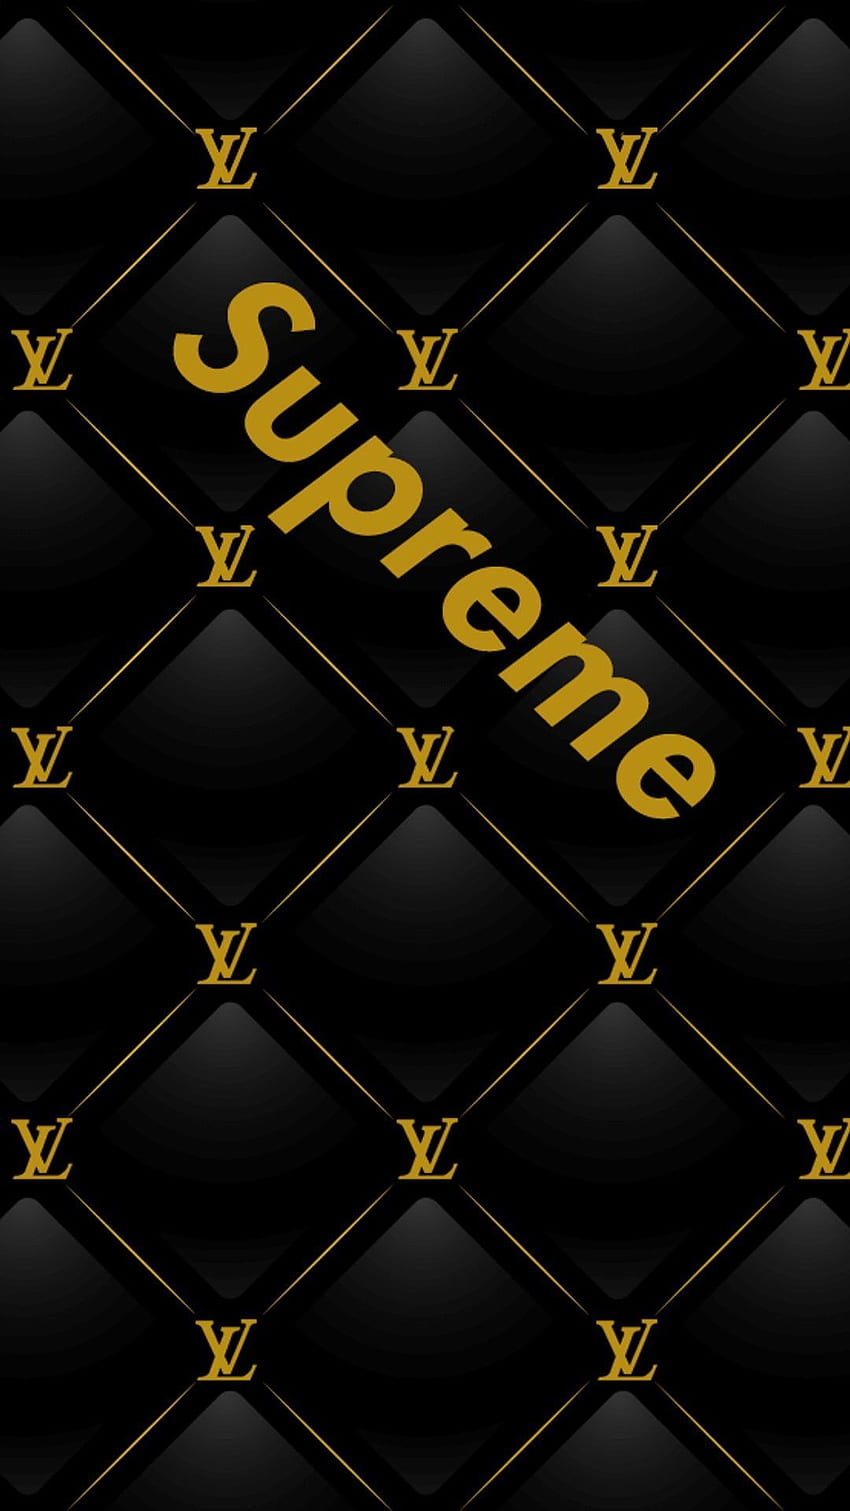 Gucci, Supreme and Gucci HD phone wallpaper